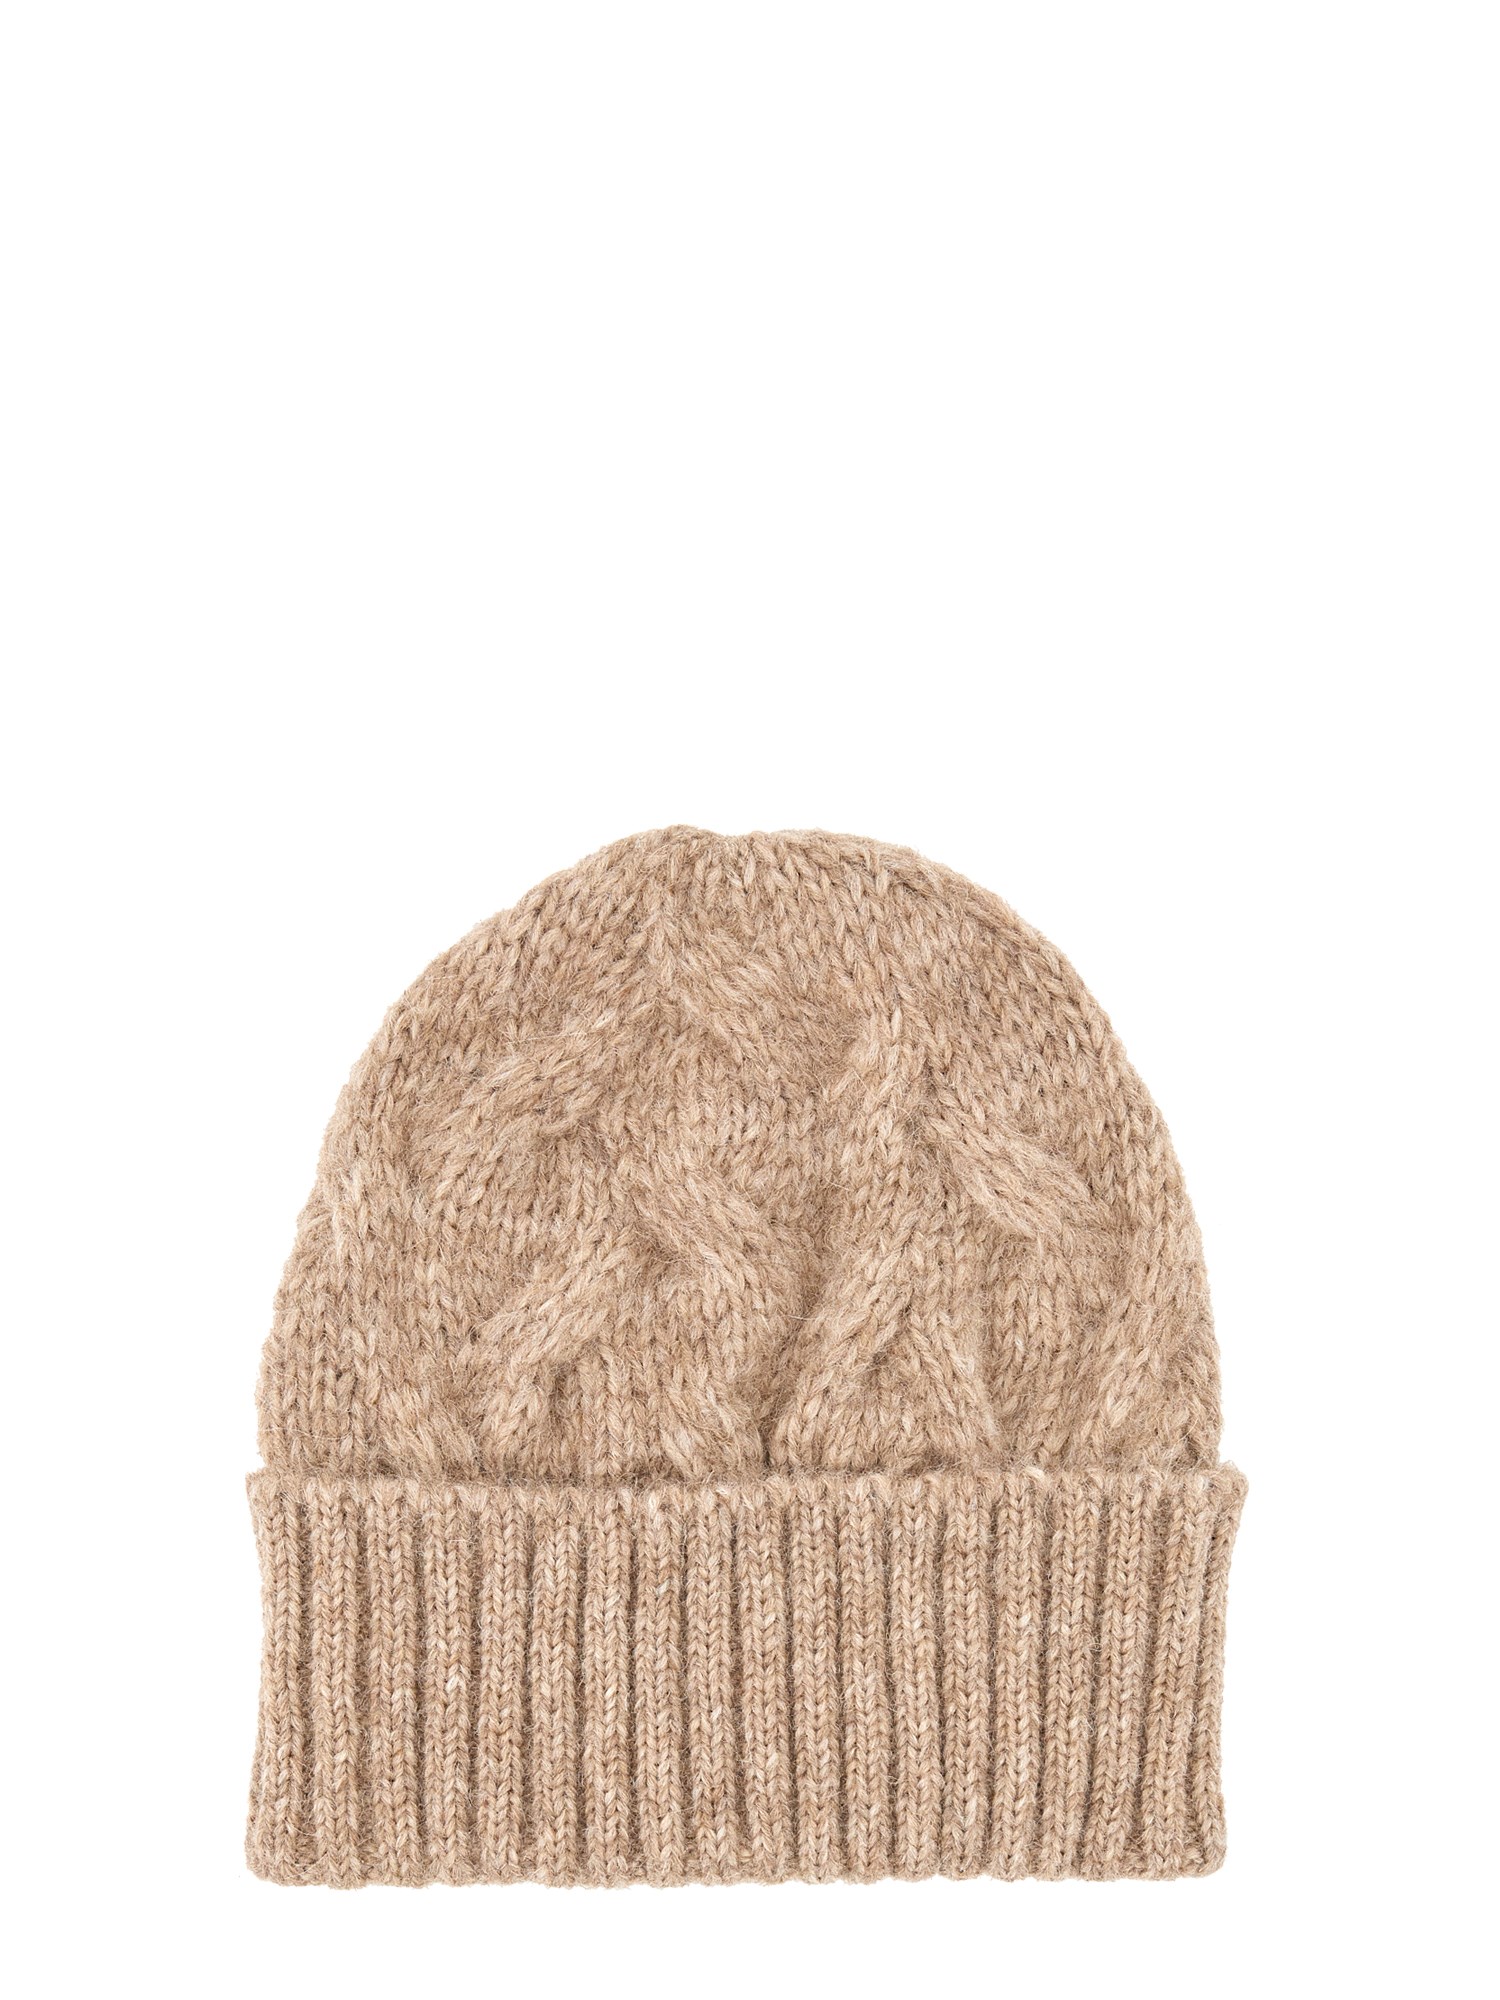 séfr knit hat